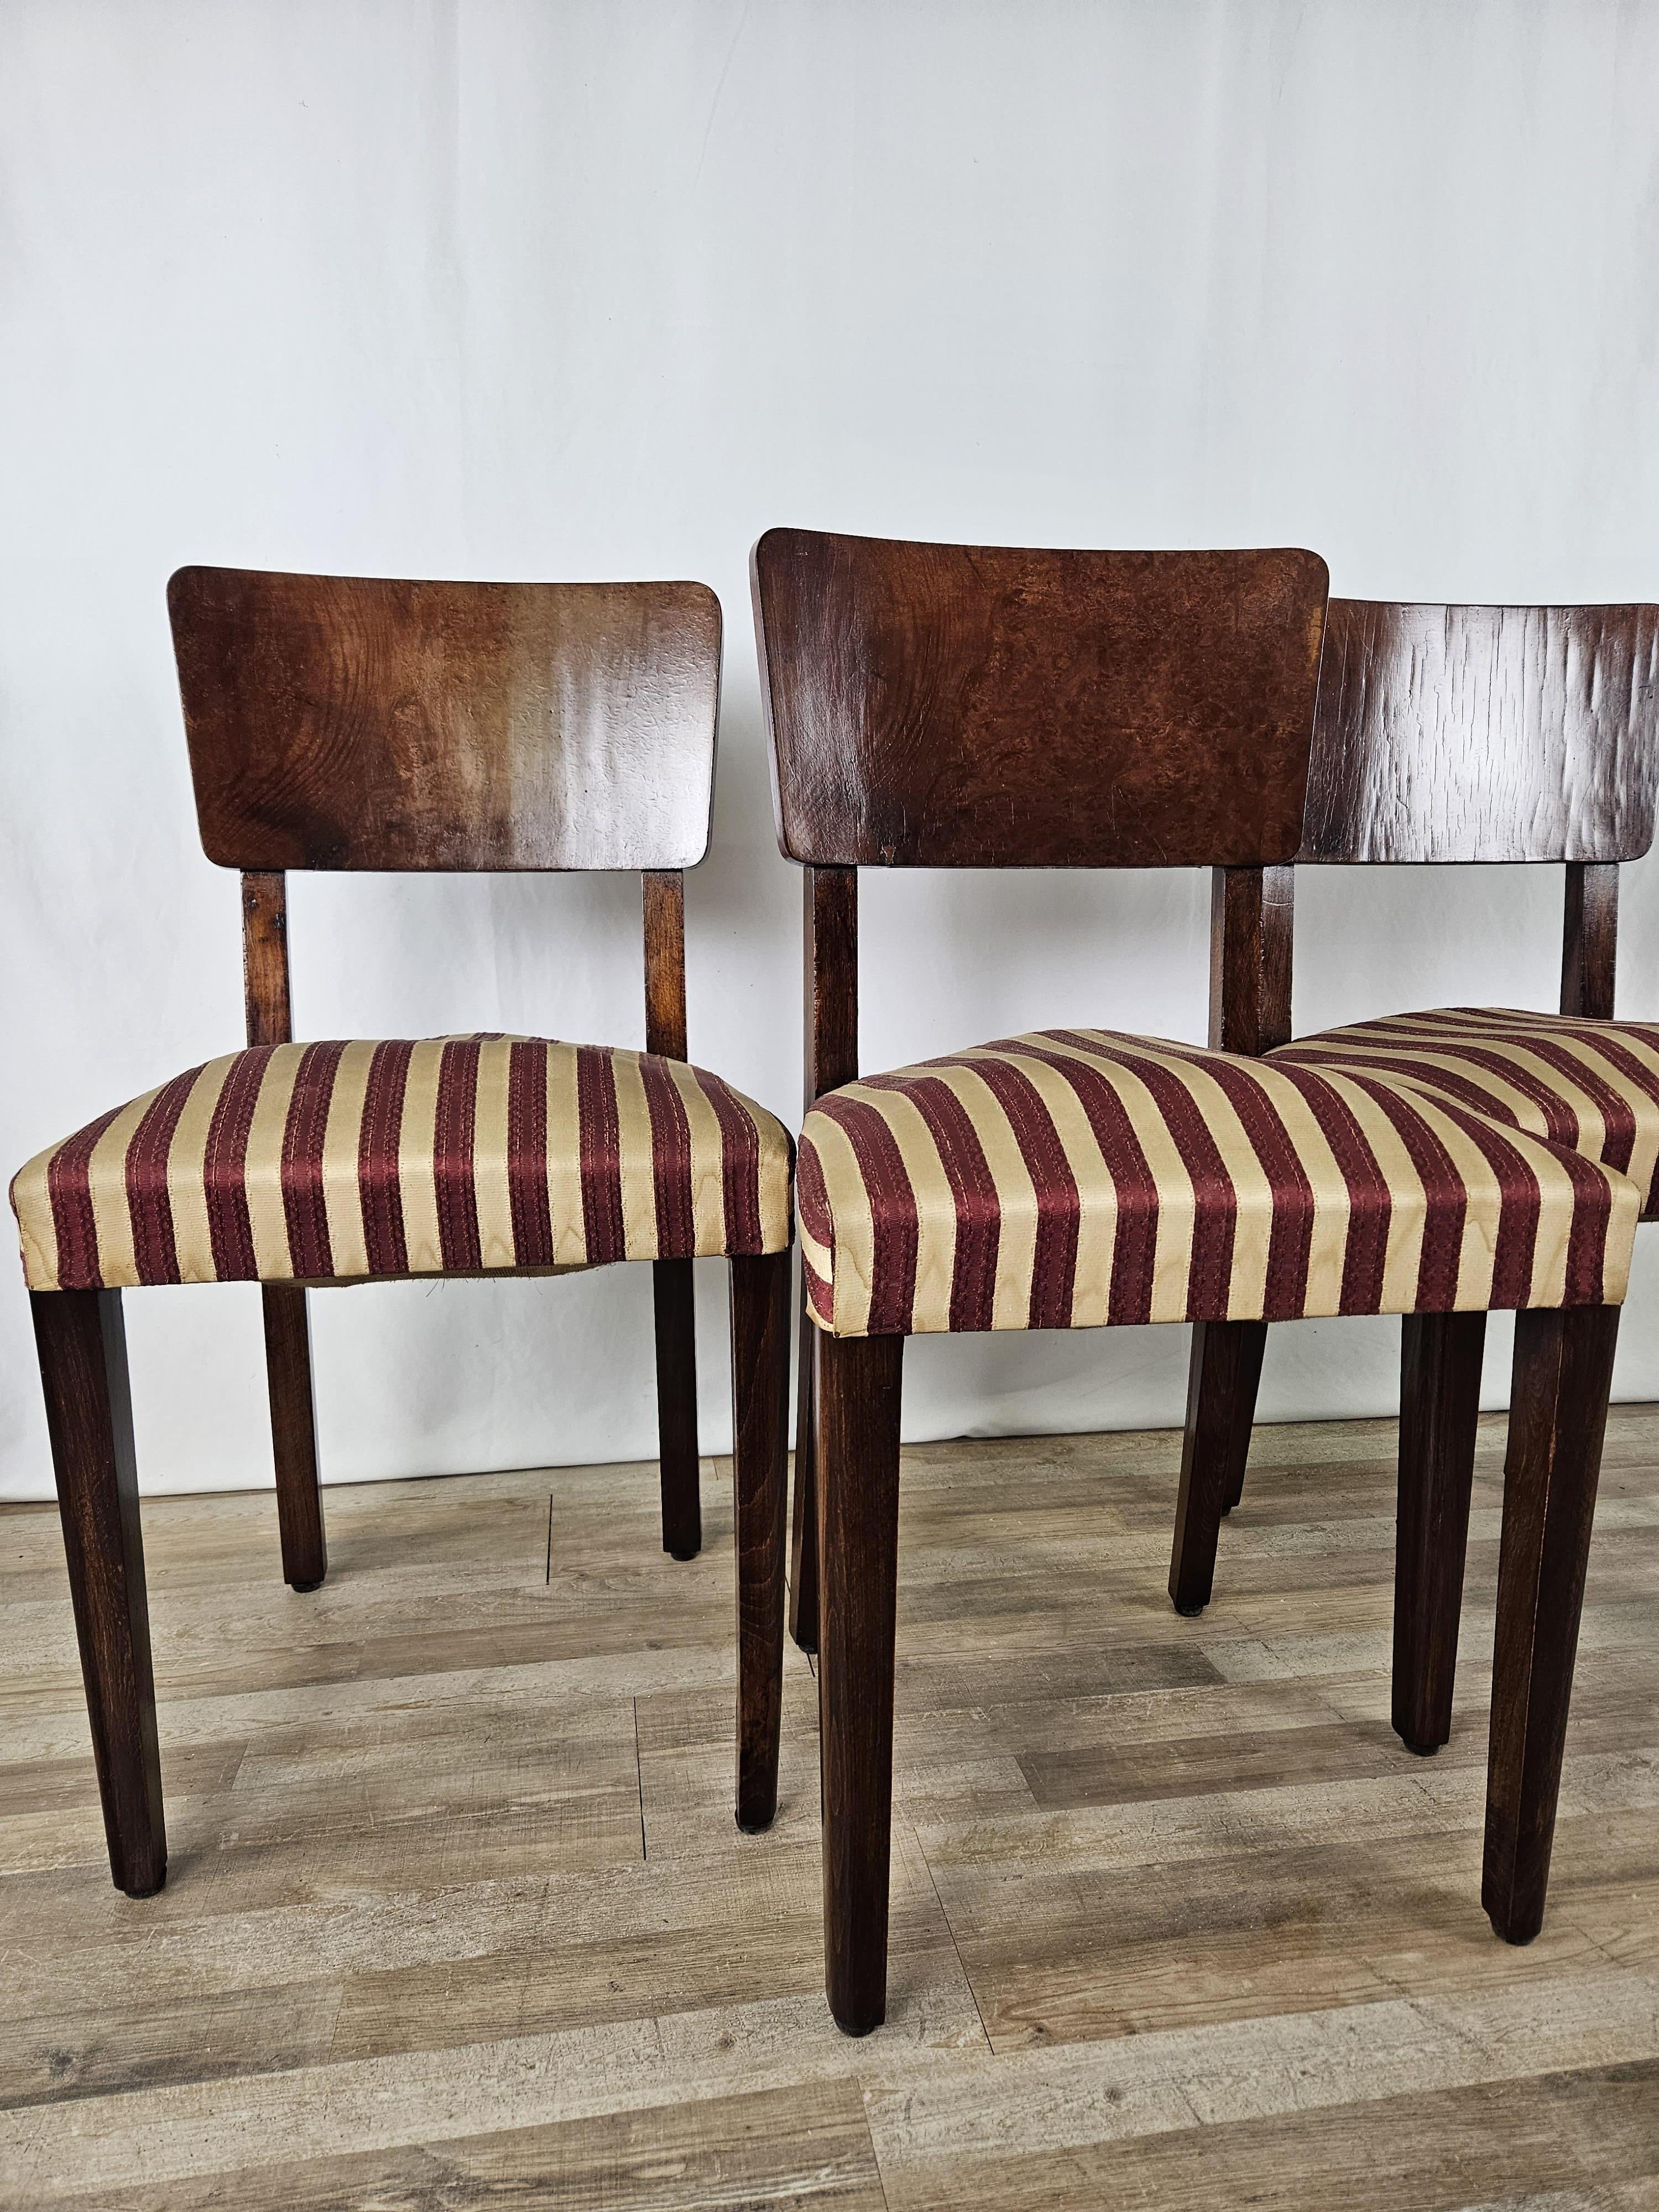 Set di sedie in radica di noce dei primi anni '40, epoca Art Decò produzione italiana.

La struttura delle sedie è stata lucidata ad olio e gommalacca, le sedute sono rivestite in tessuto original dell'epoca pertanto andrebbe sostituita la stoffa o